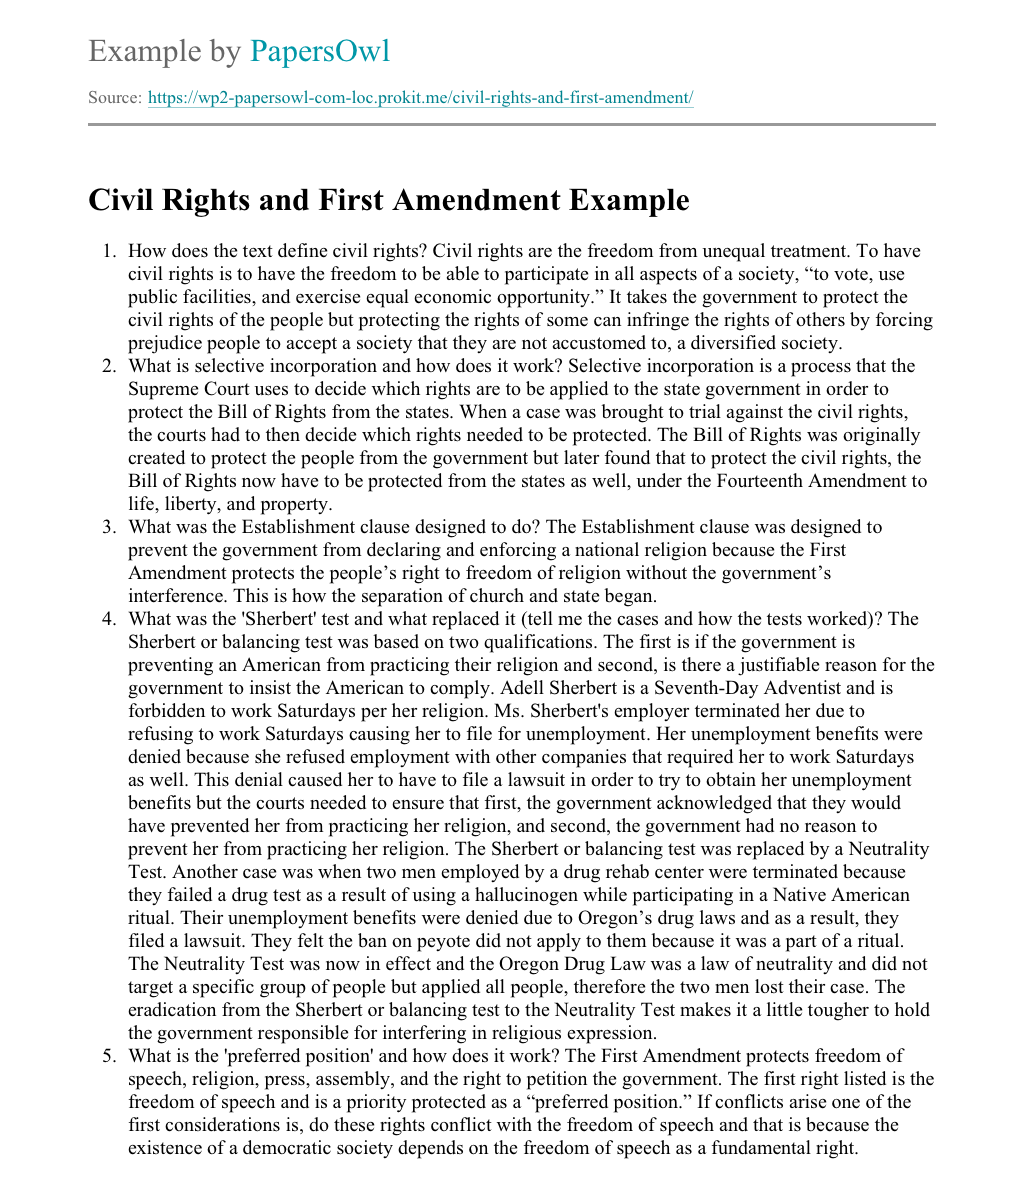 Human rights essay topics